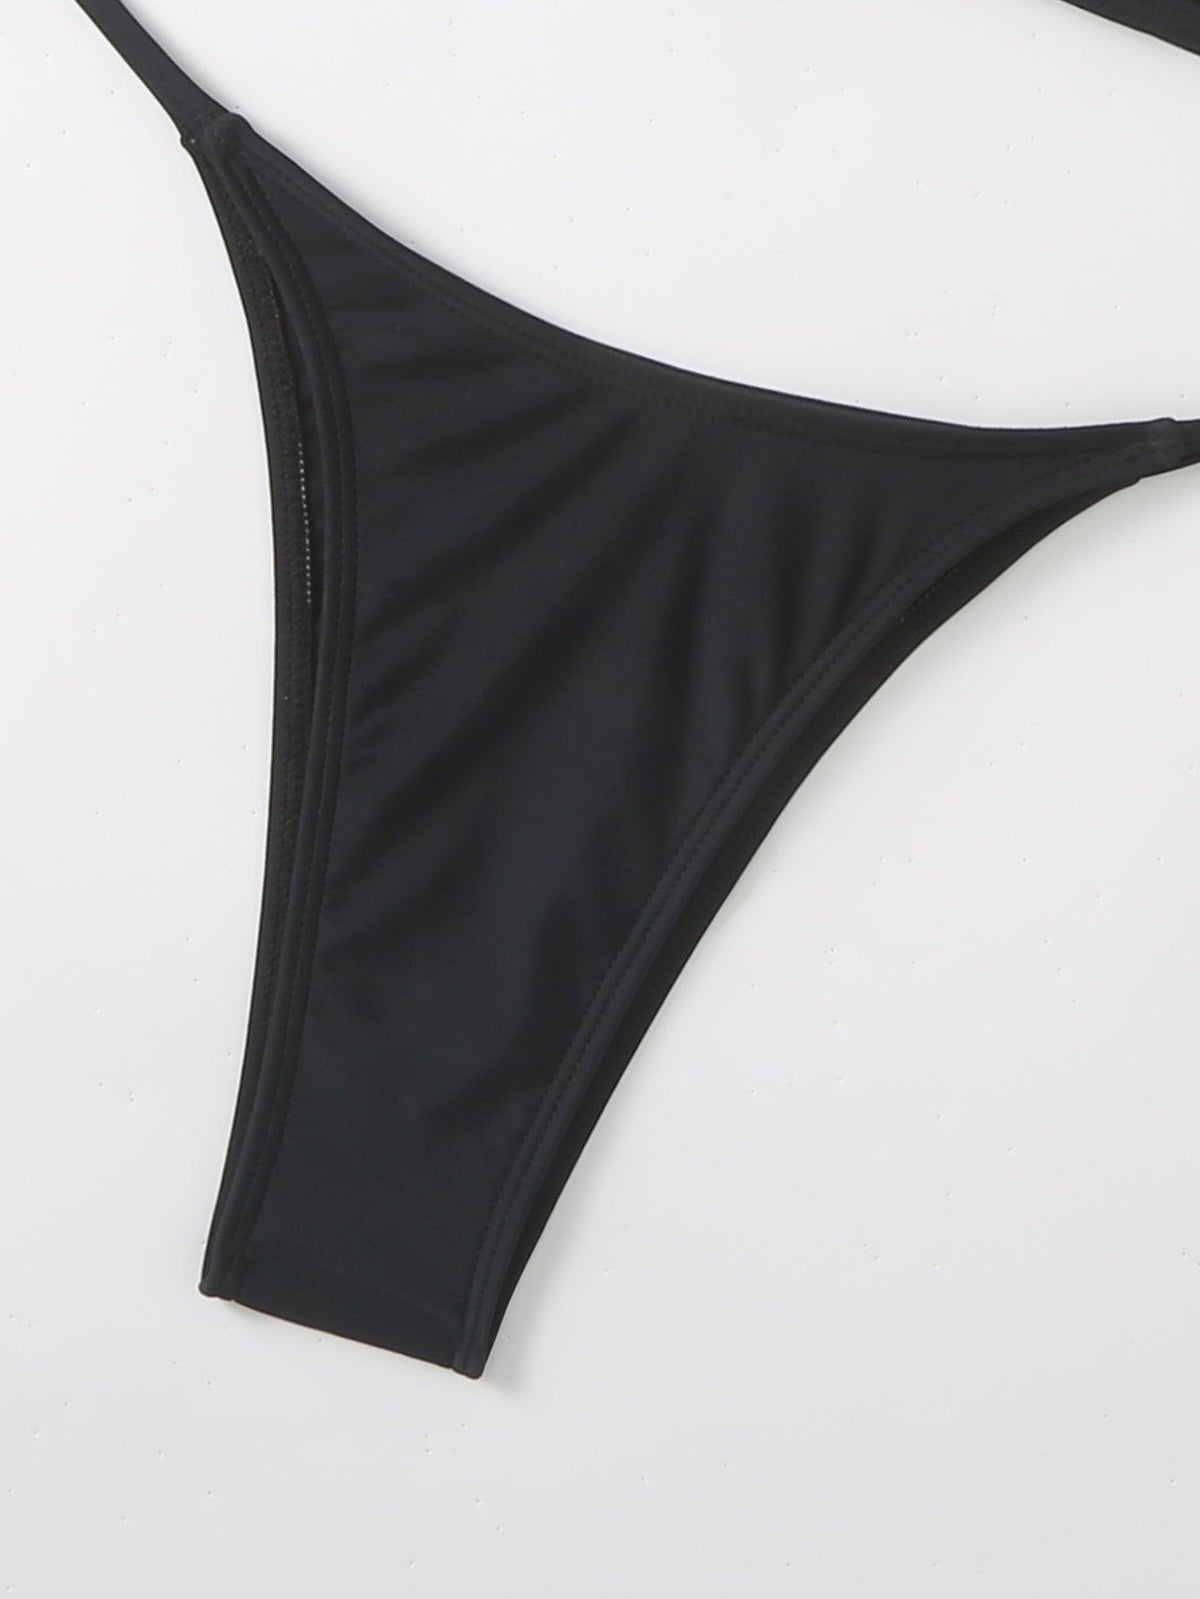 Sexy Lace Bikini Set - Black Swimwear for Women, GFIT - GFIT SPORTS